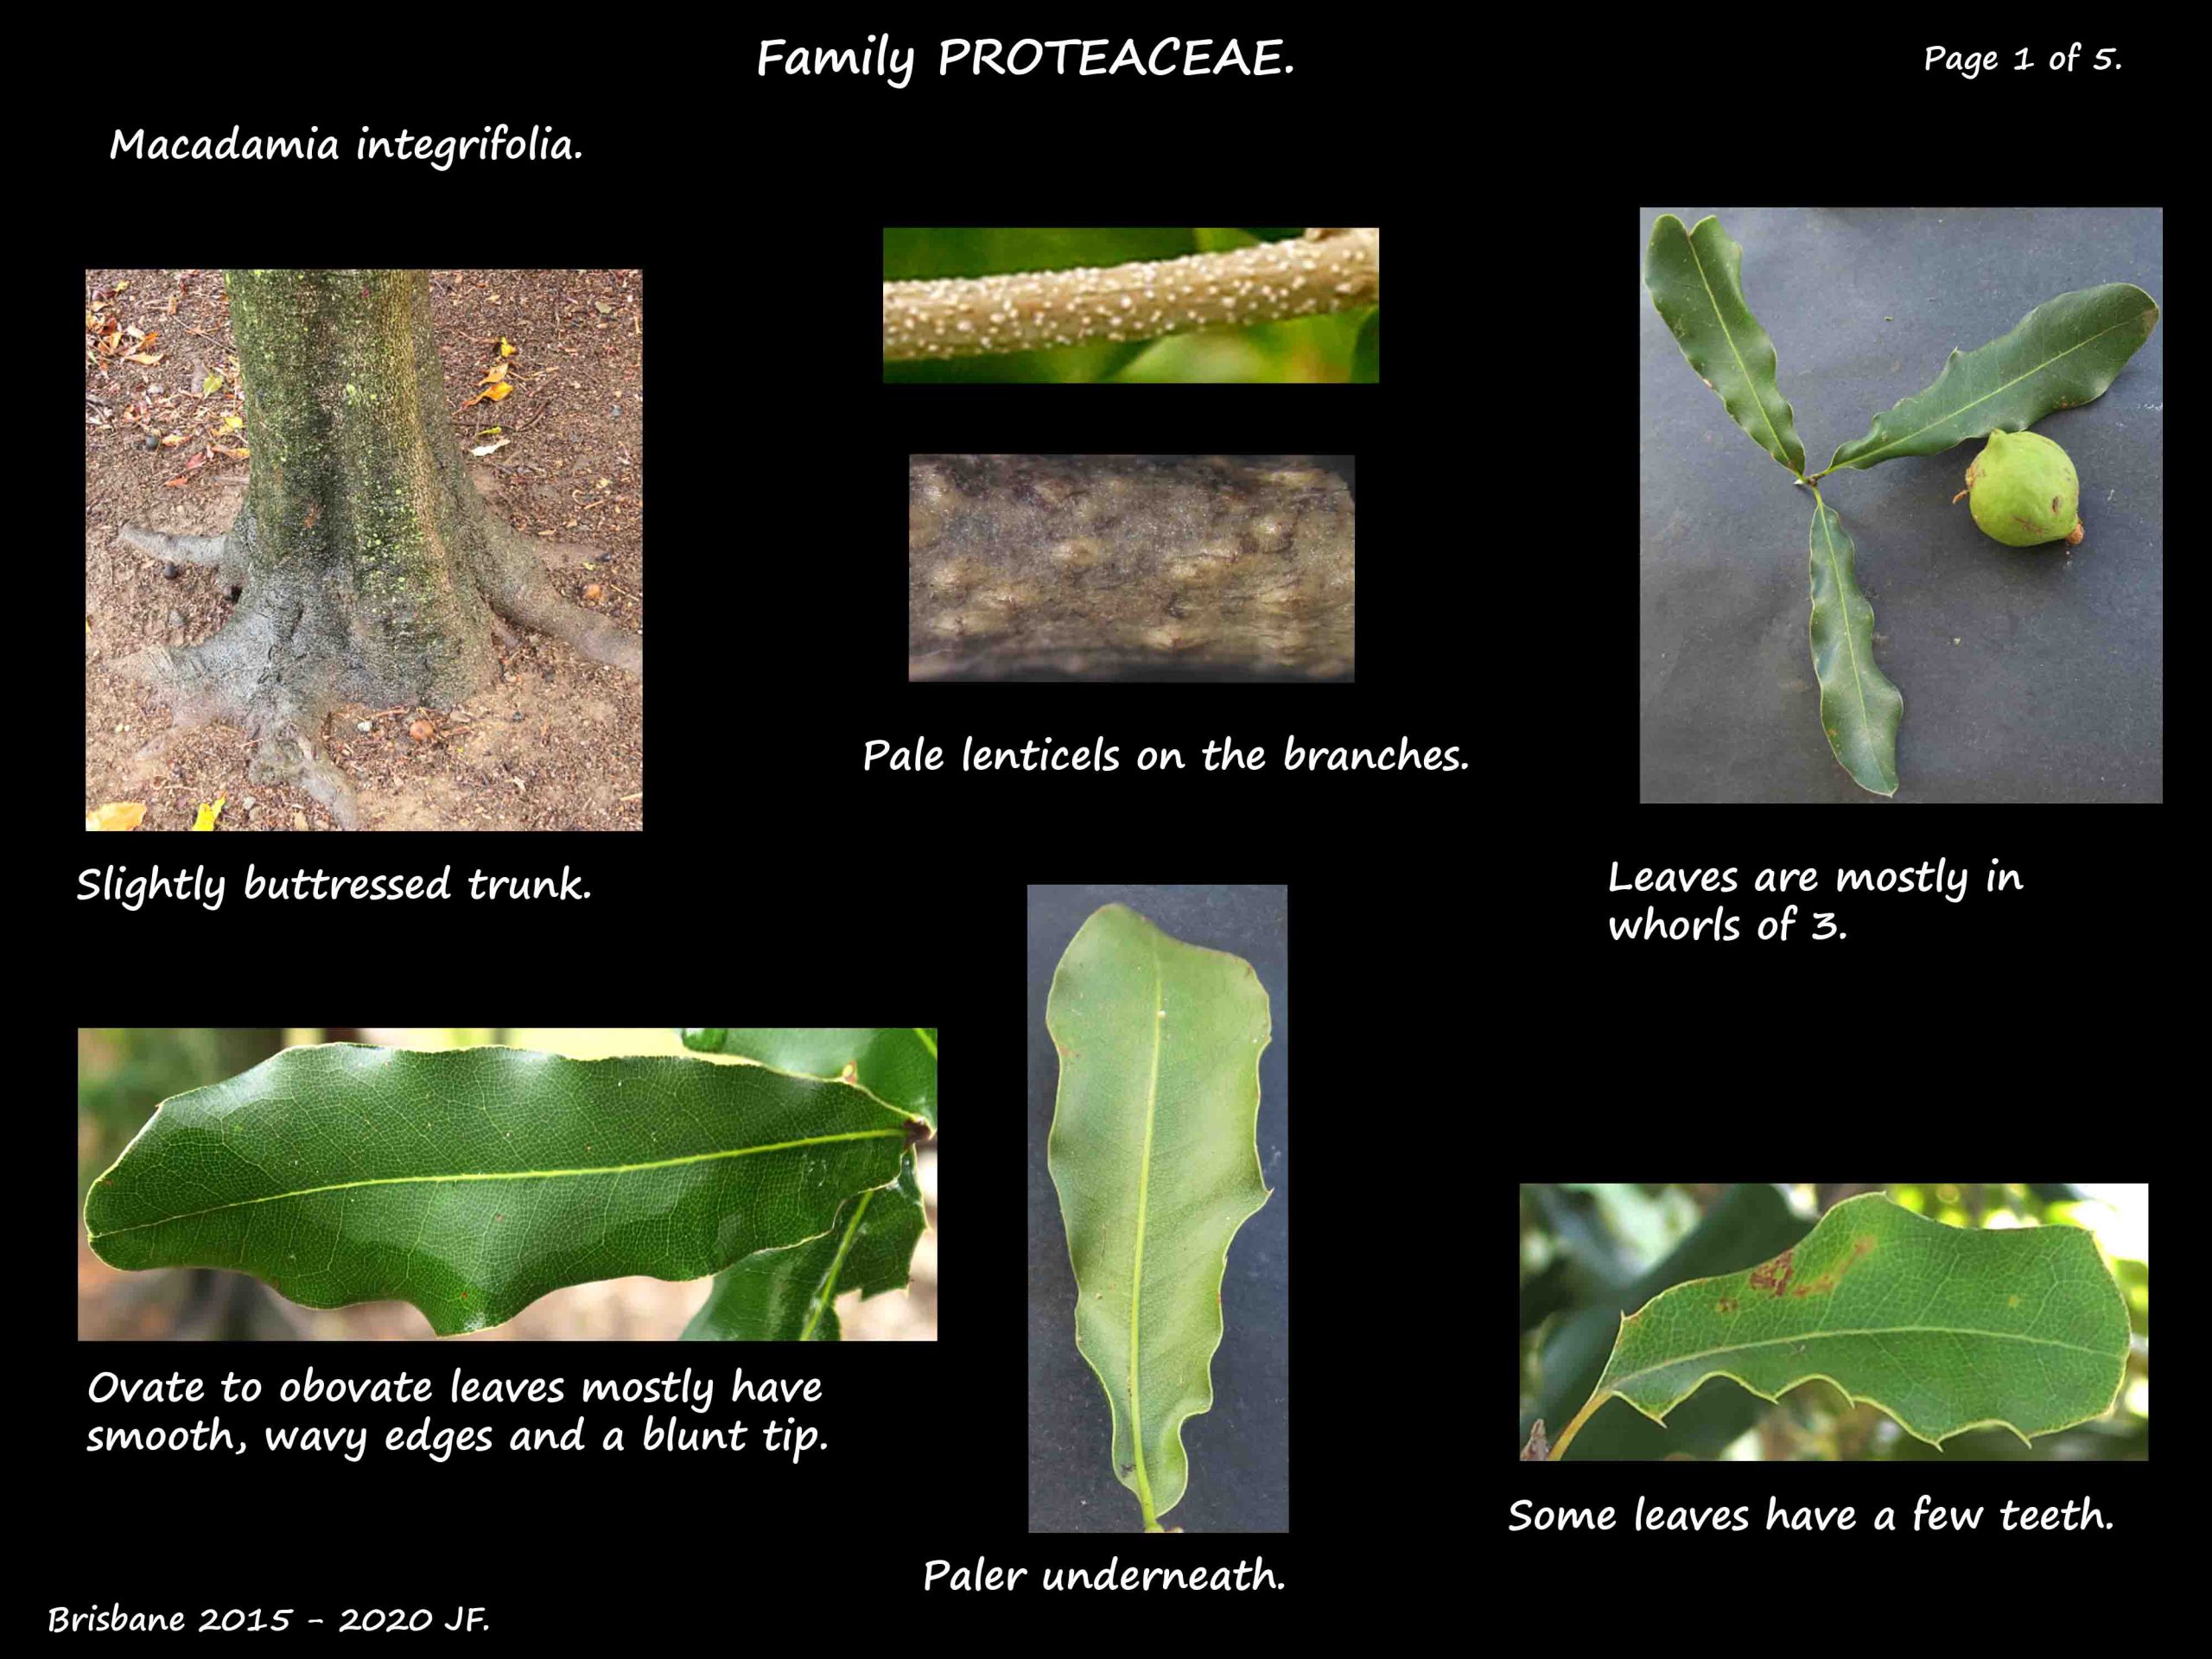 1 Macadamia integrifolia trunk & leaves